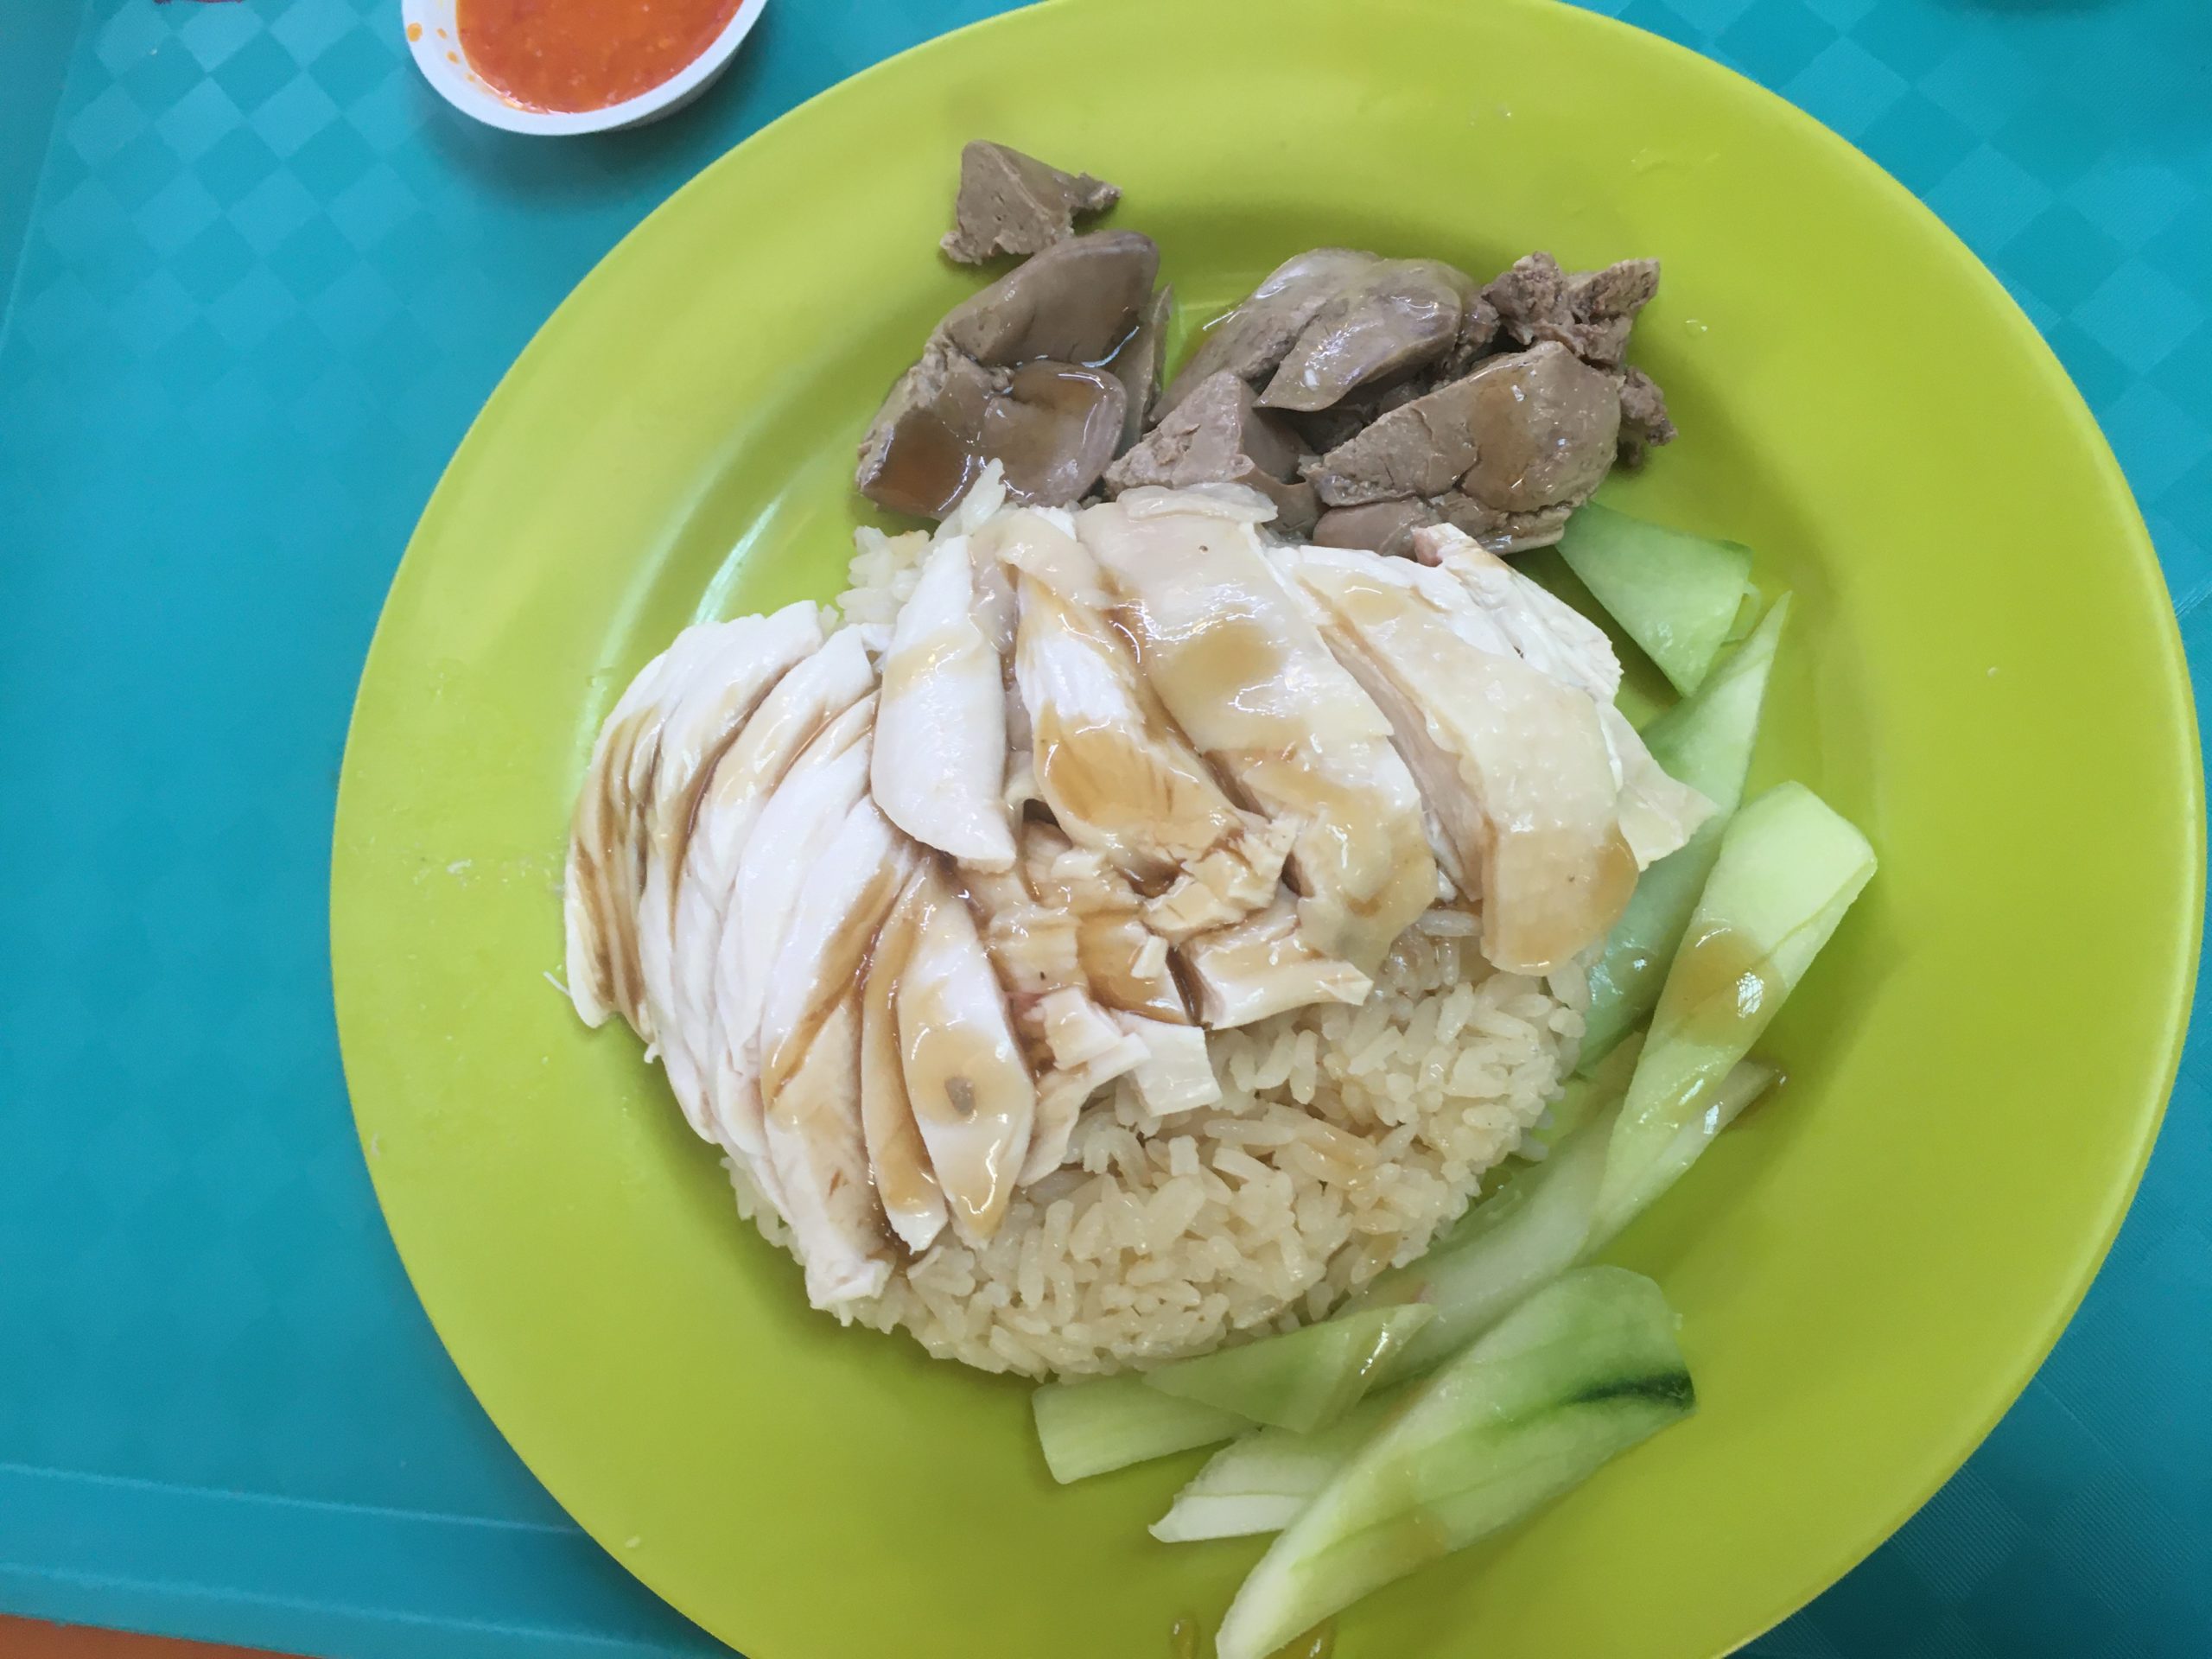 シンガポールの庶民食堂 ホーカーでご飯を食べよう Vol 3 Singalife Online